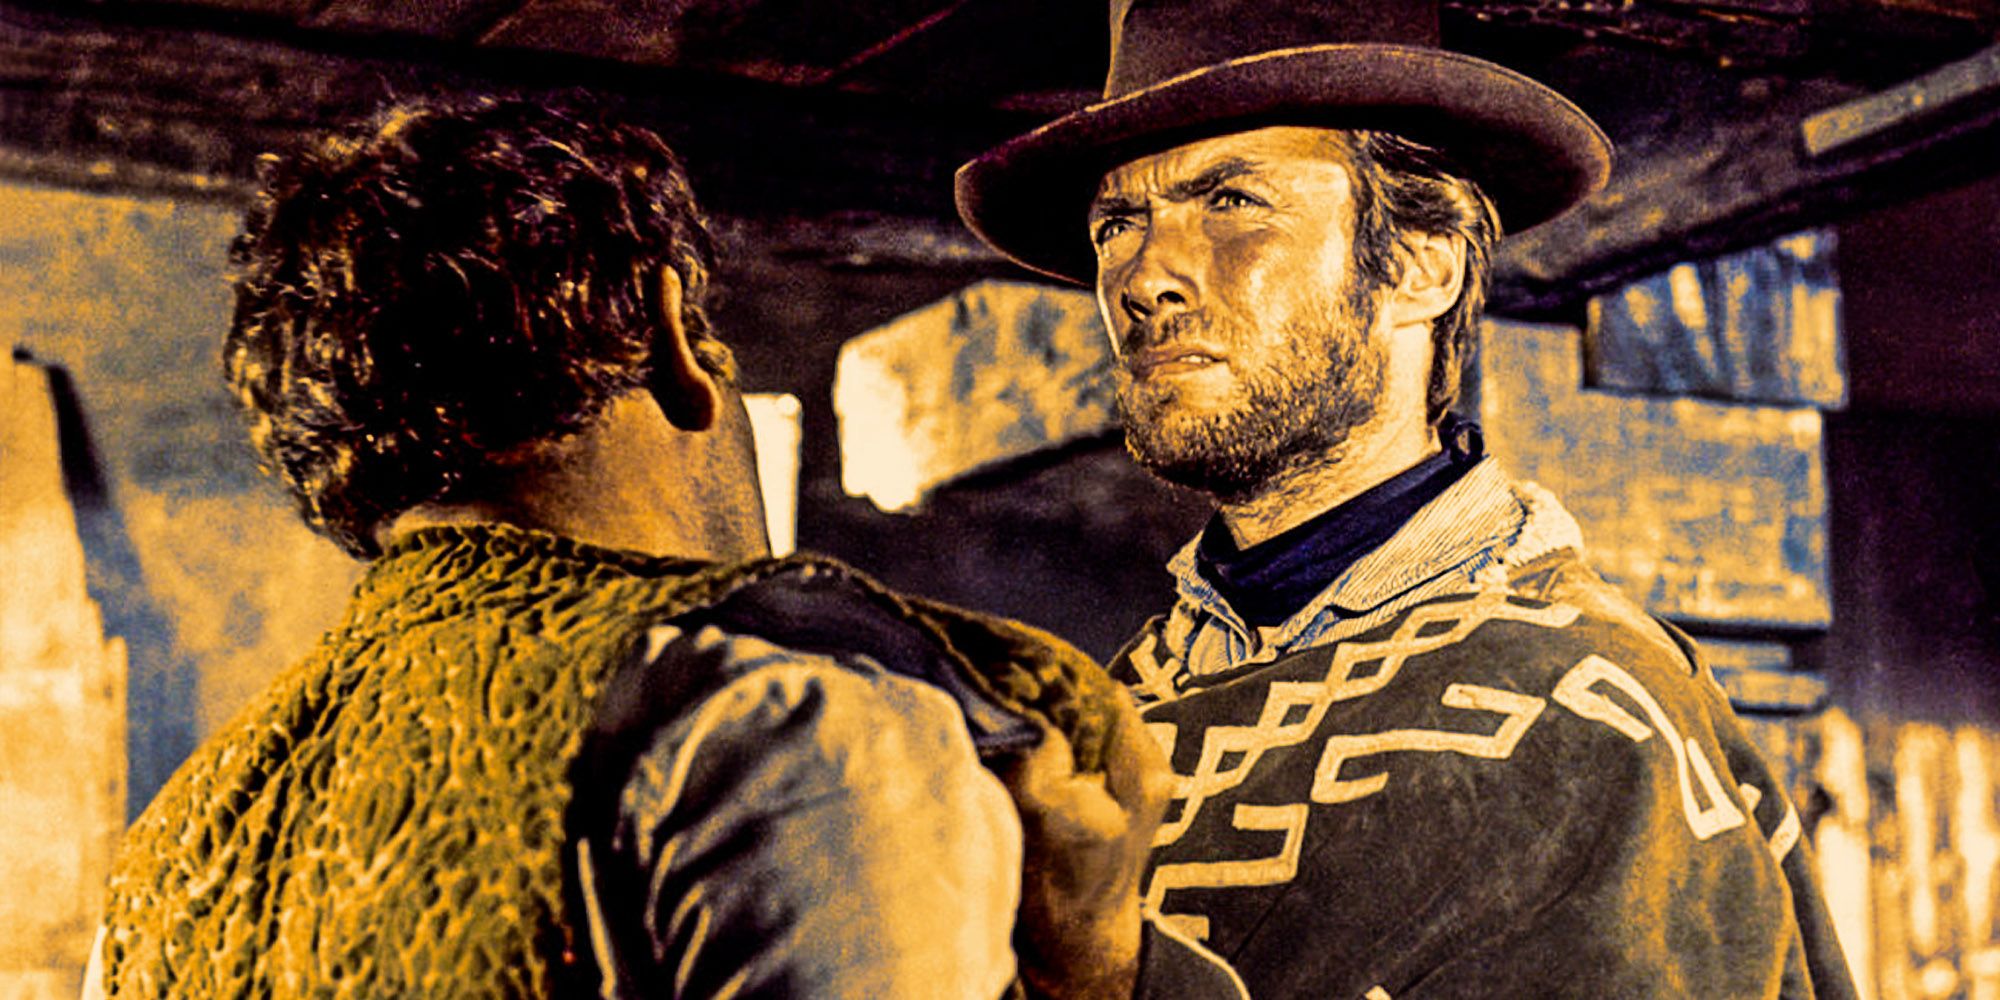 Perché Clint Eastwood non ha realizzato il western di Sergio Leone?